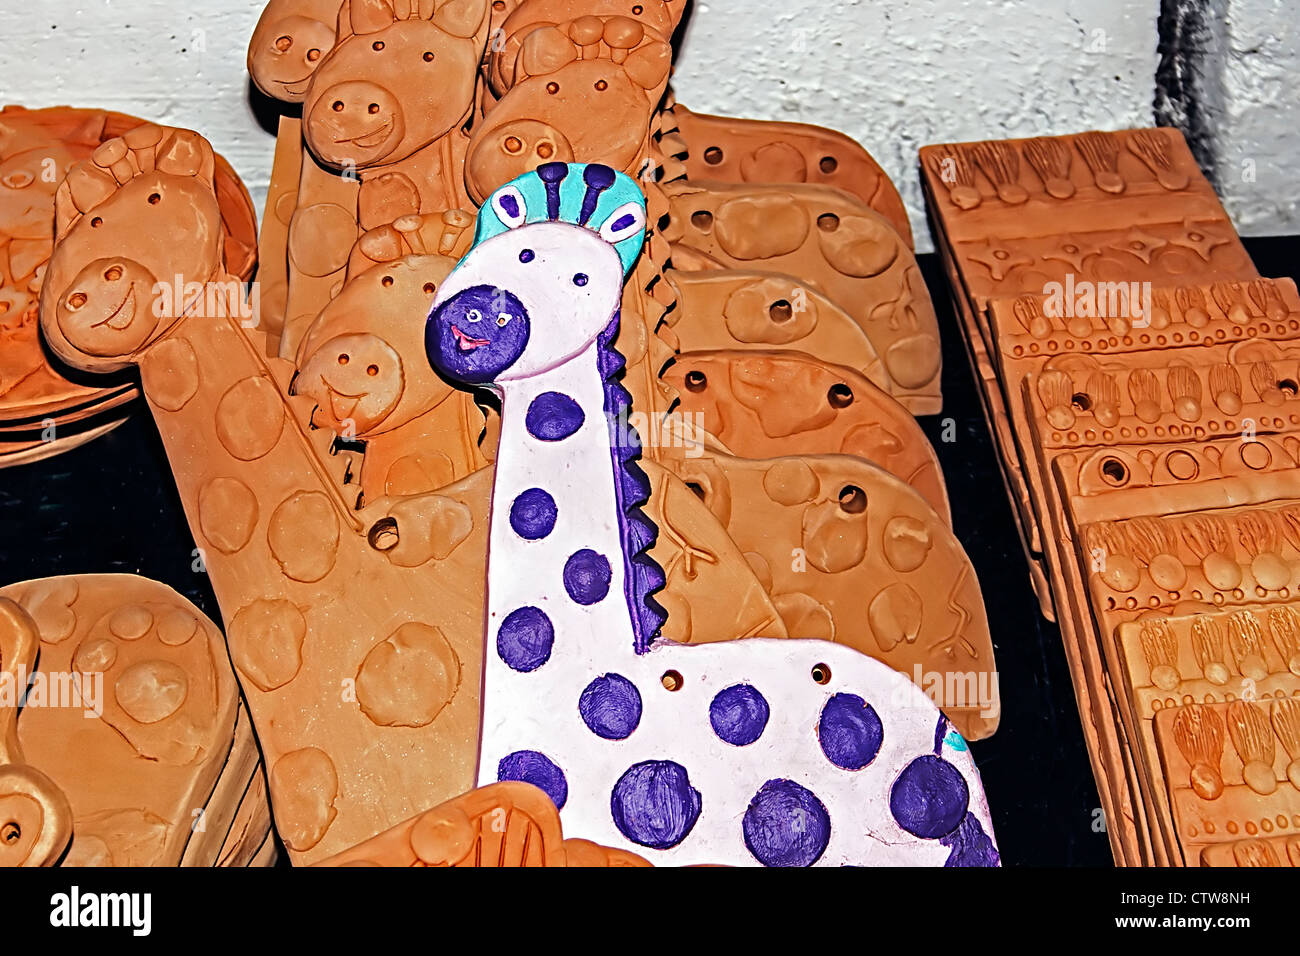 Différents types d'argile, avec des dessins de secours, prêt à être coloré par des enfants lors d'un atelier. Timisoara, Roumanie. Banque D'Images